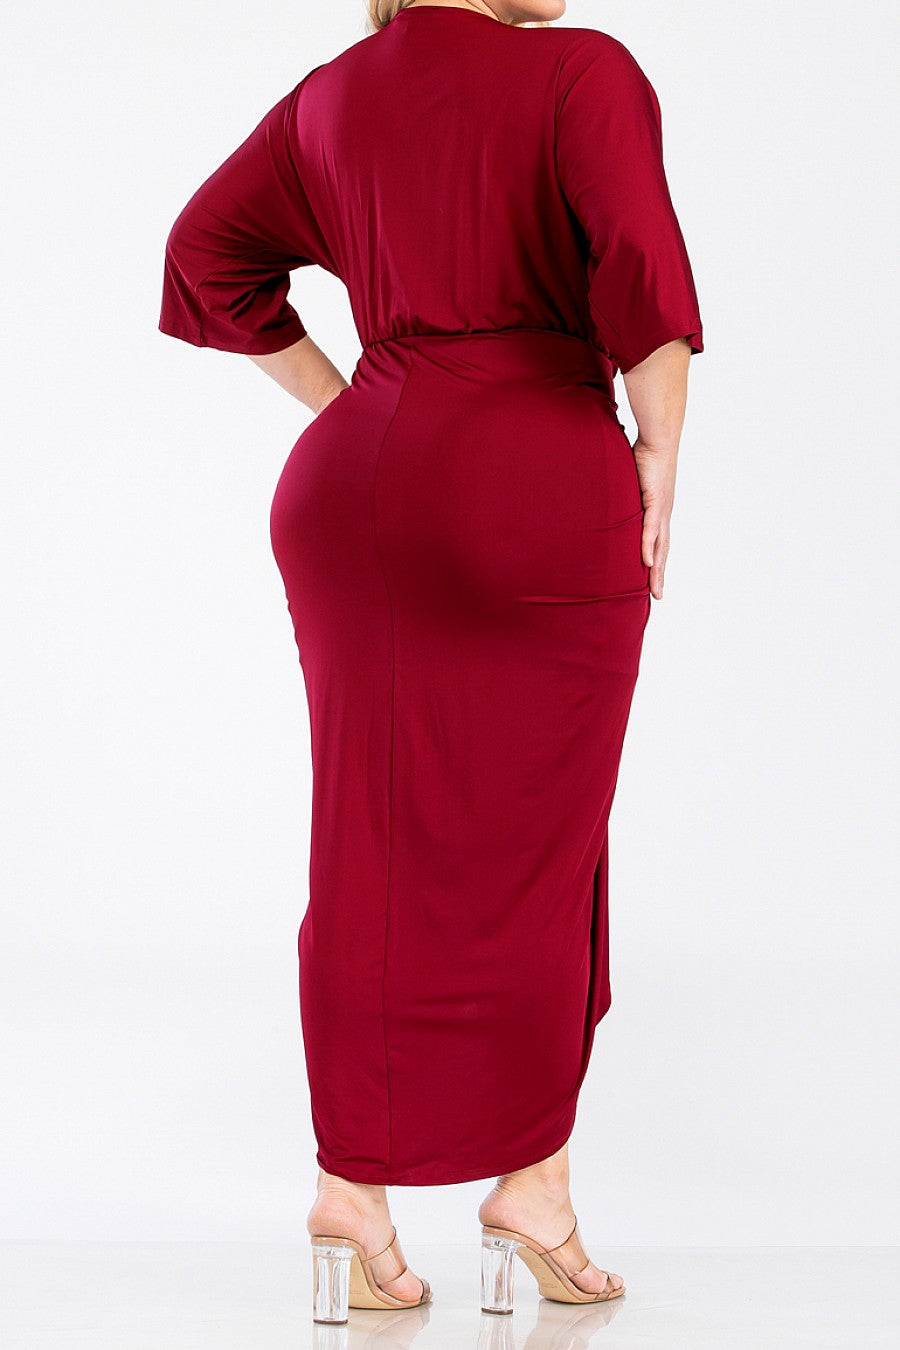 Lady In Red Venetian Bodycon Dress - Plus